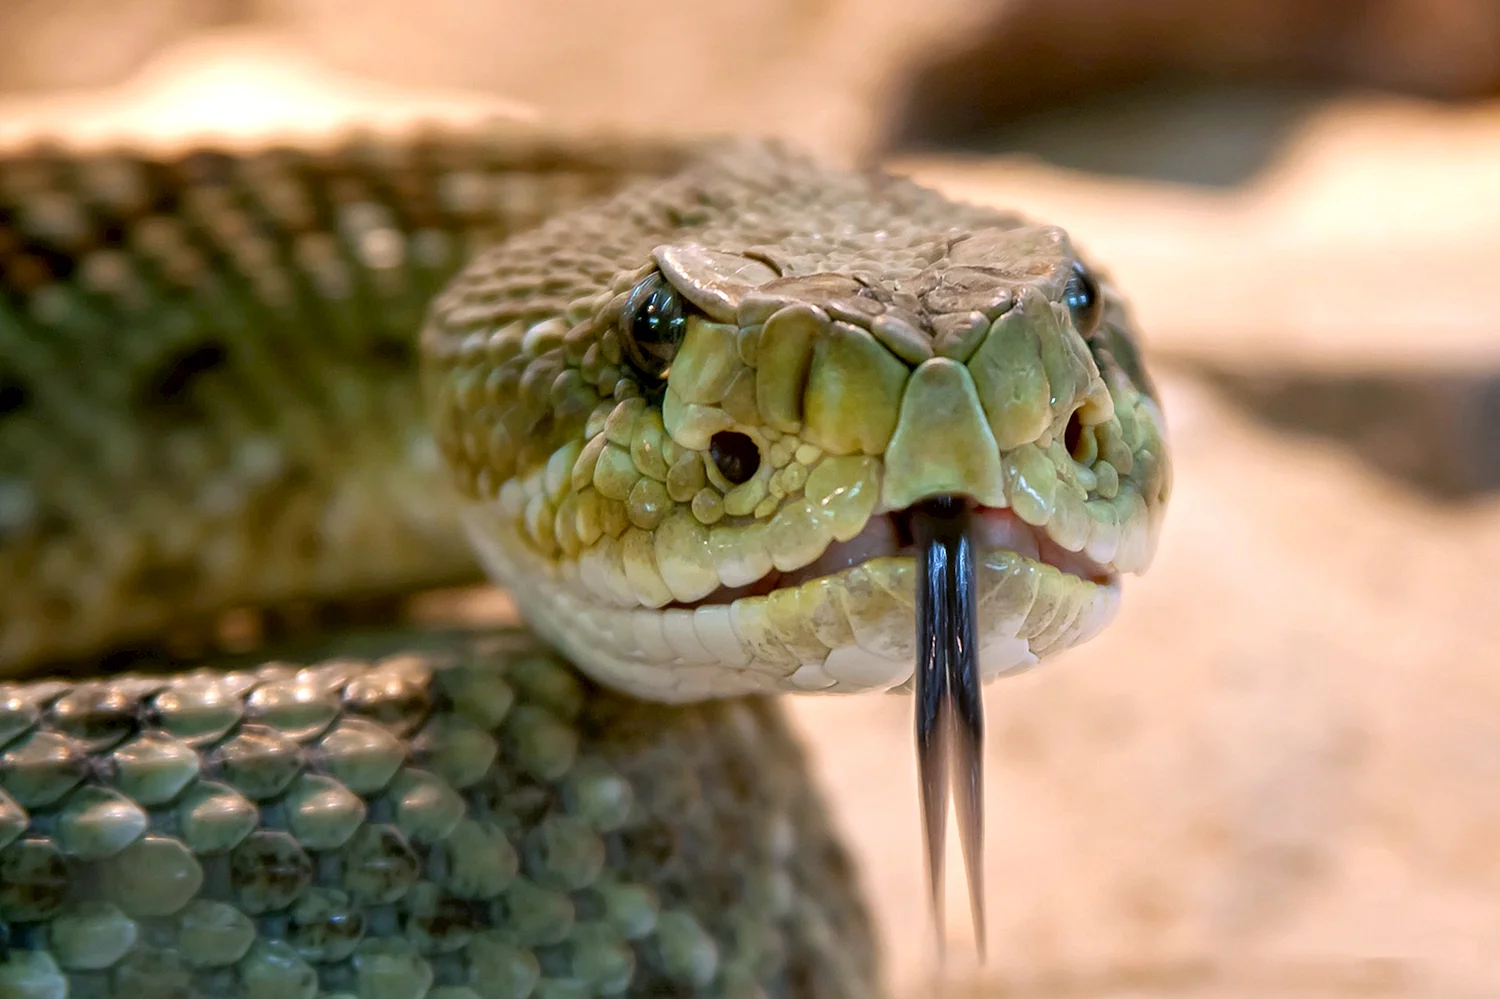 Техасский гремучник змея